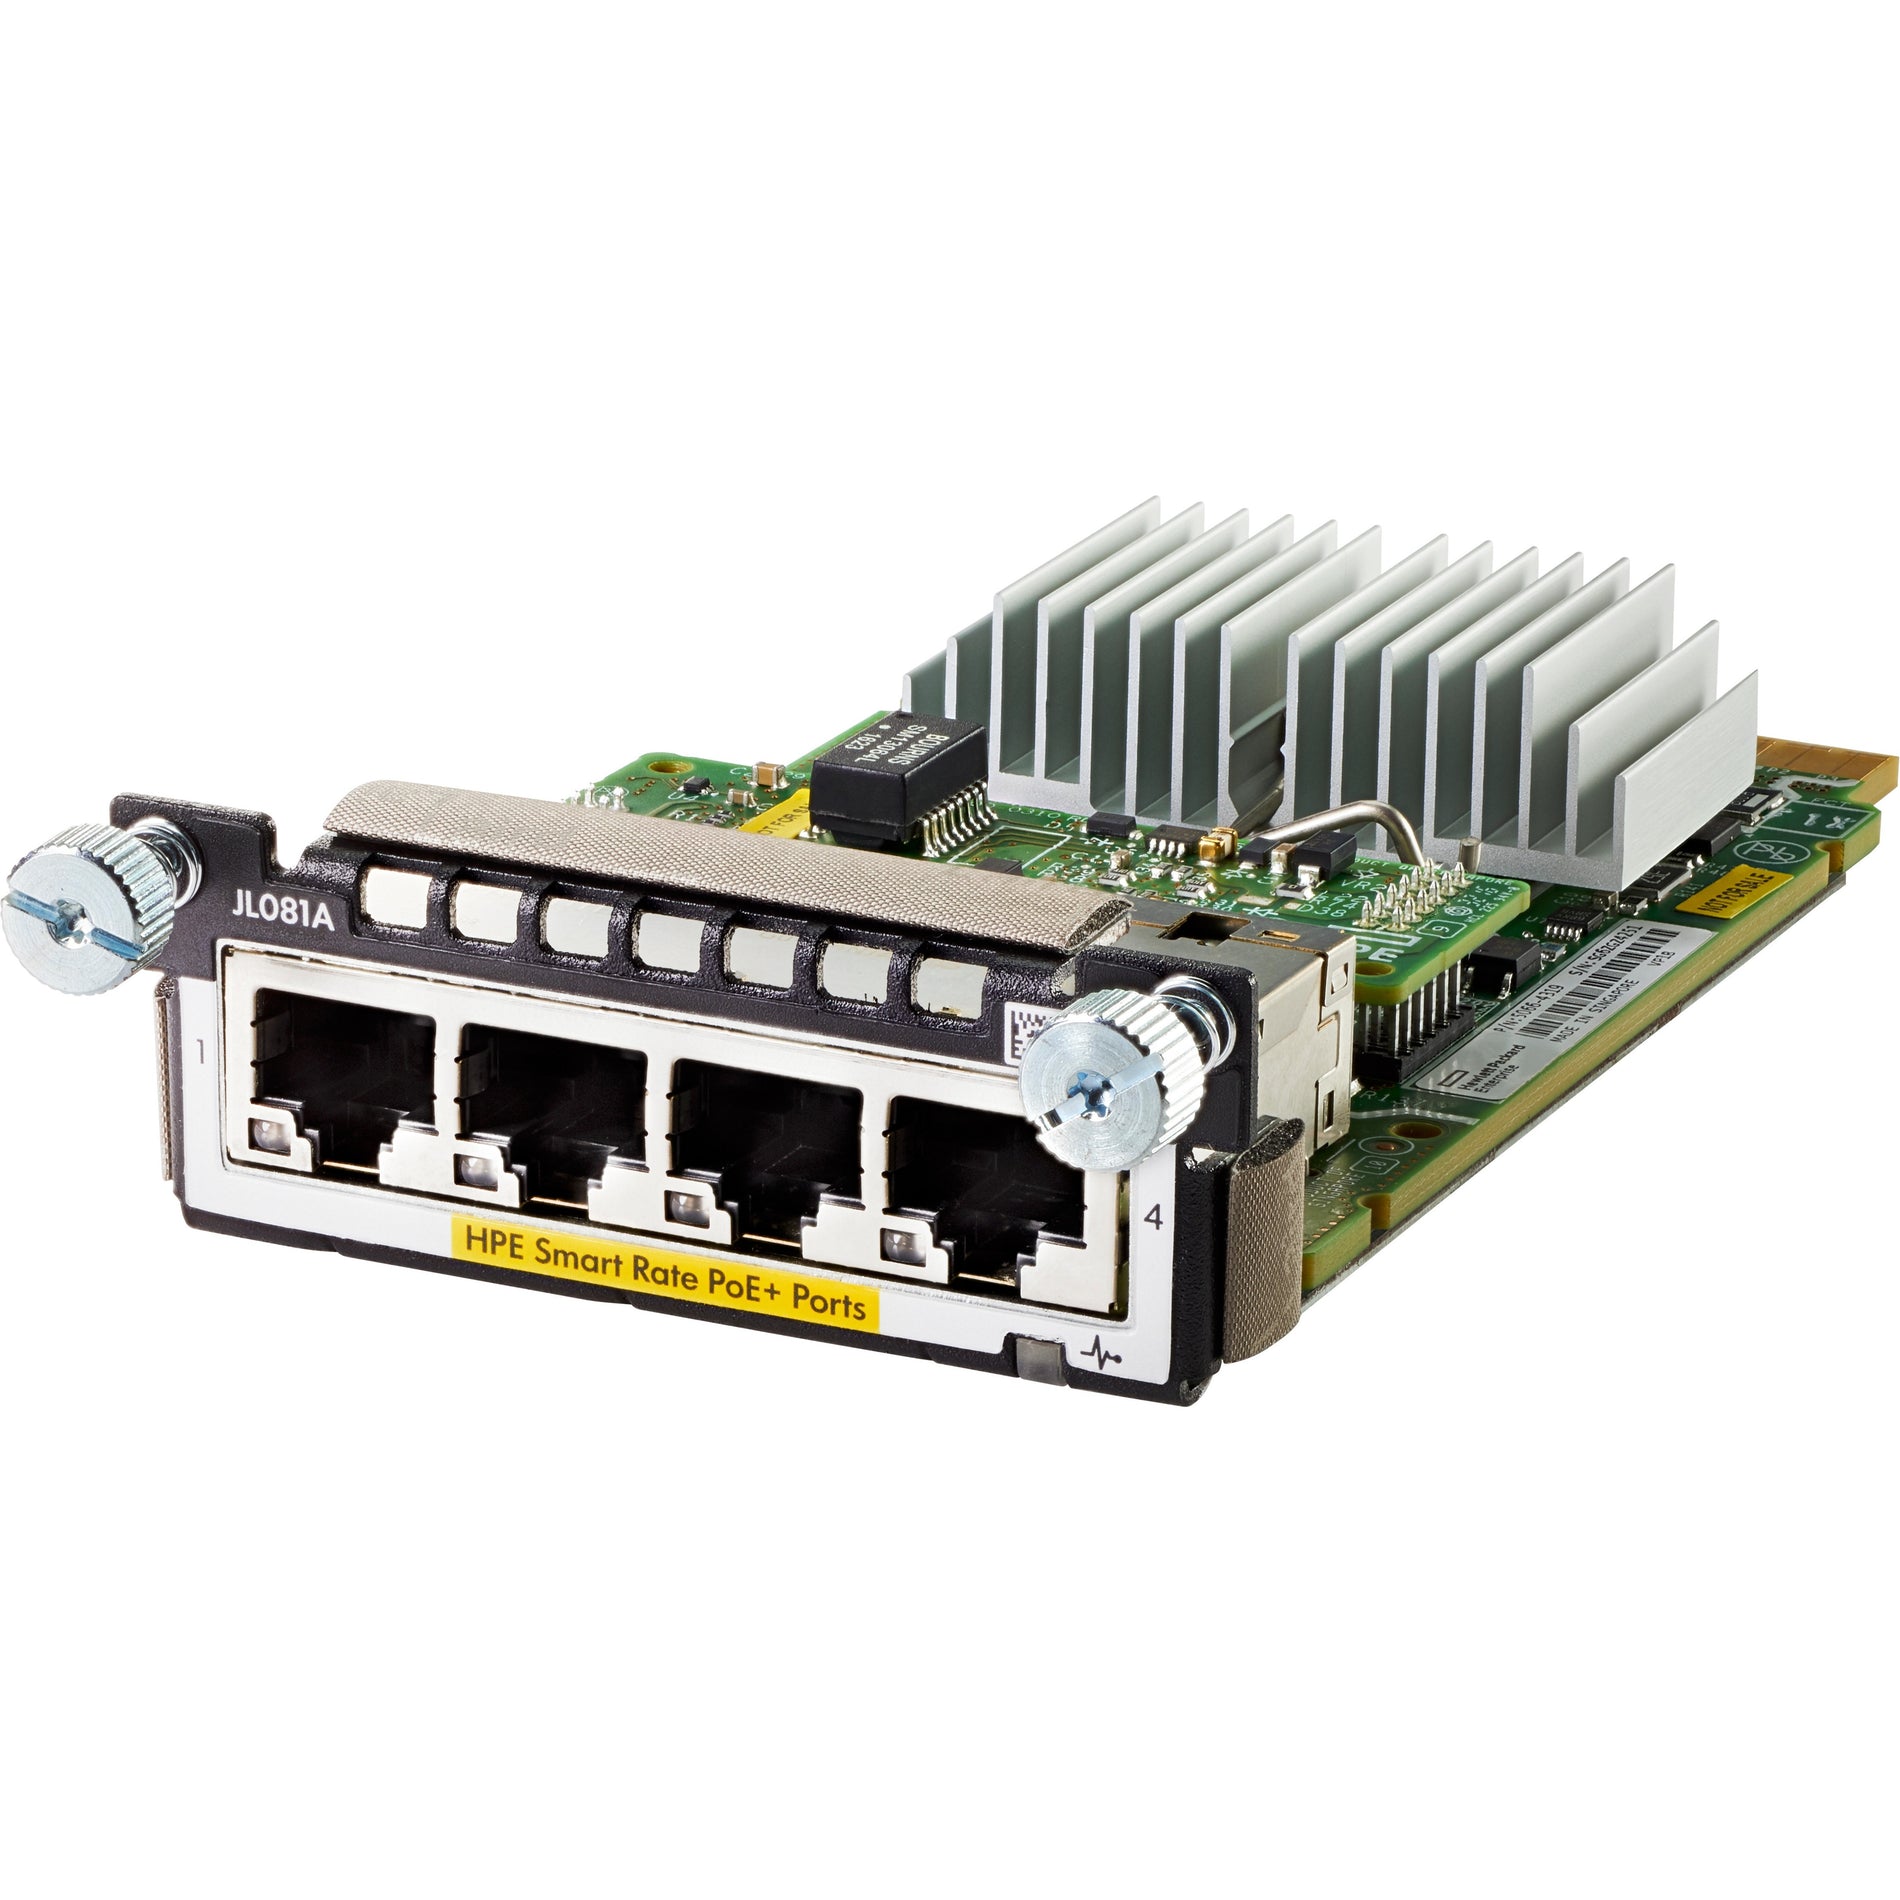 Aruba JL081A Expansion Module, 10 Gigabit Ethernet, 10GBase-X